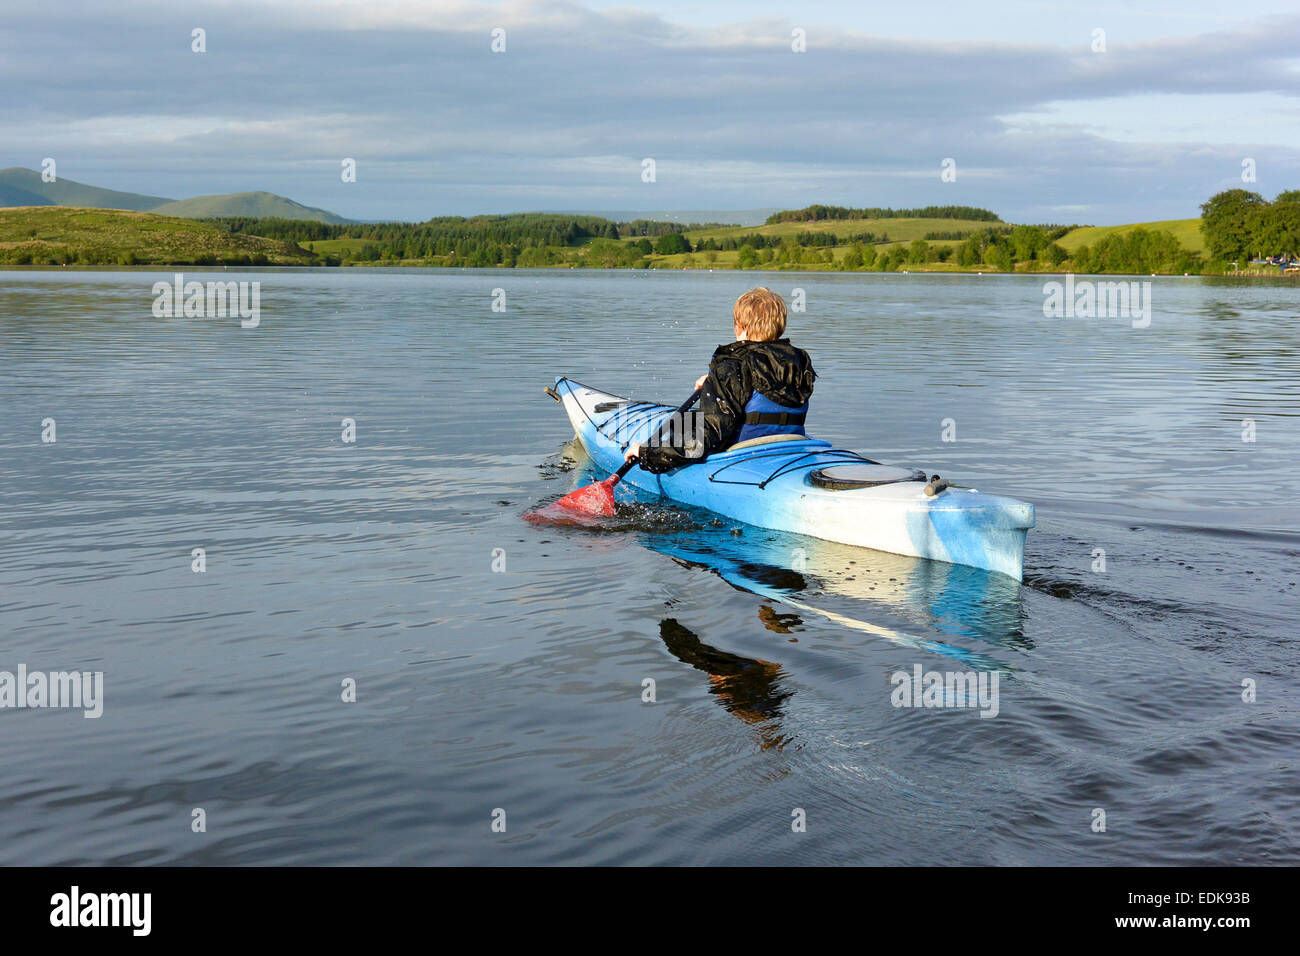 Giovane ragazzo in un kayak su Killington L:ake, Cumbria, Regno Unito Foto Stock